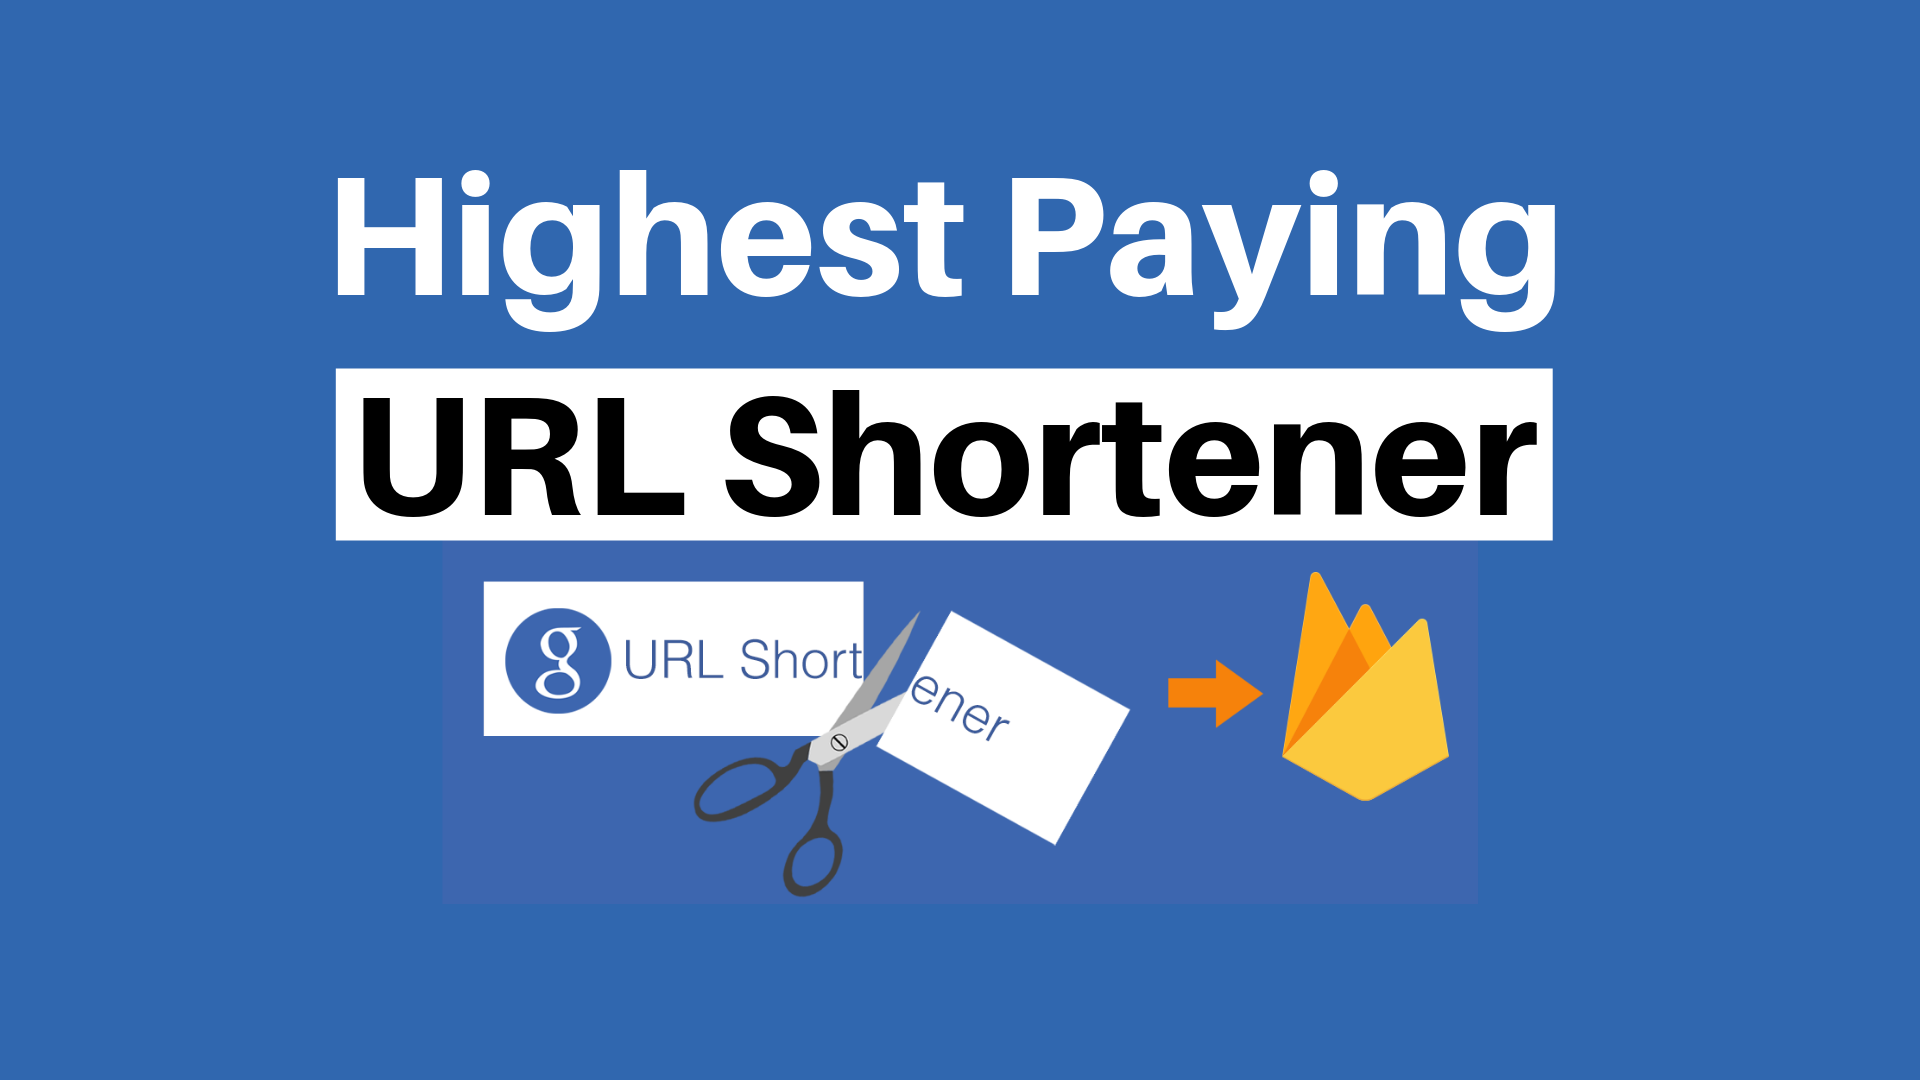 Best Highest Paying URL Shortener